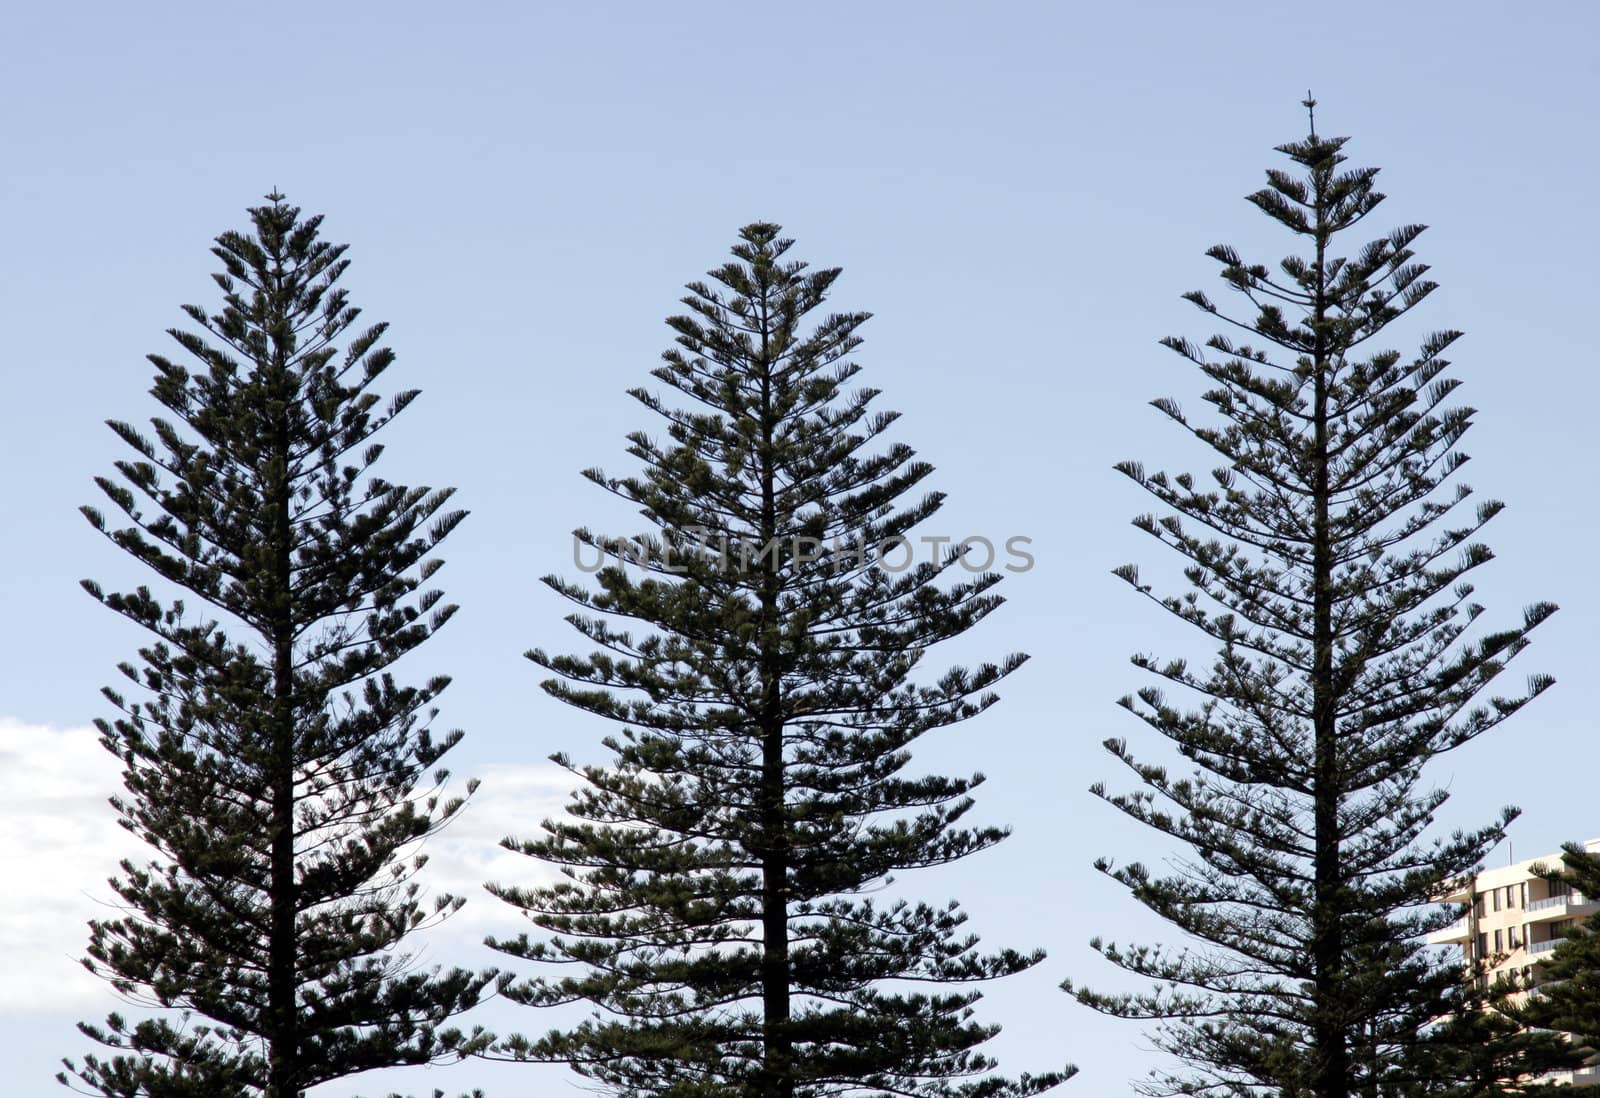 Three Pine Trees - Sydney - Australia